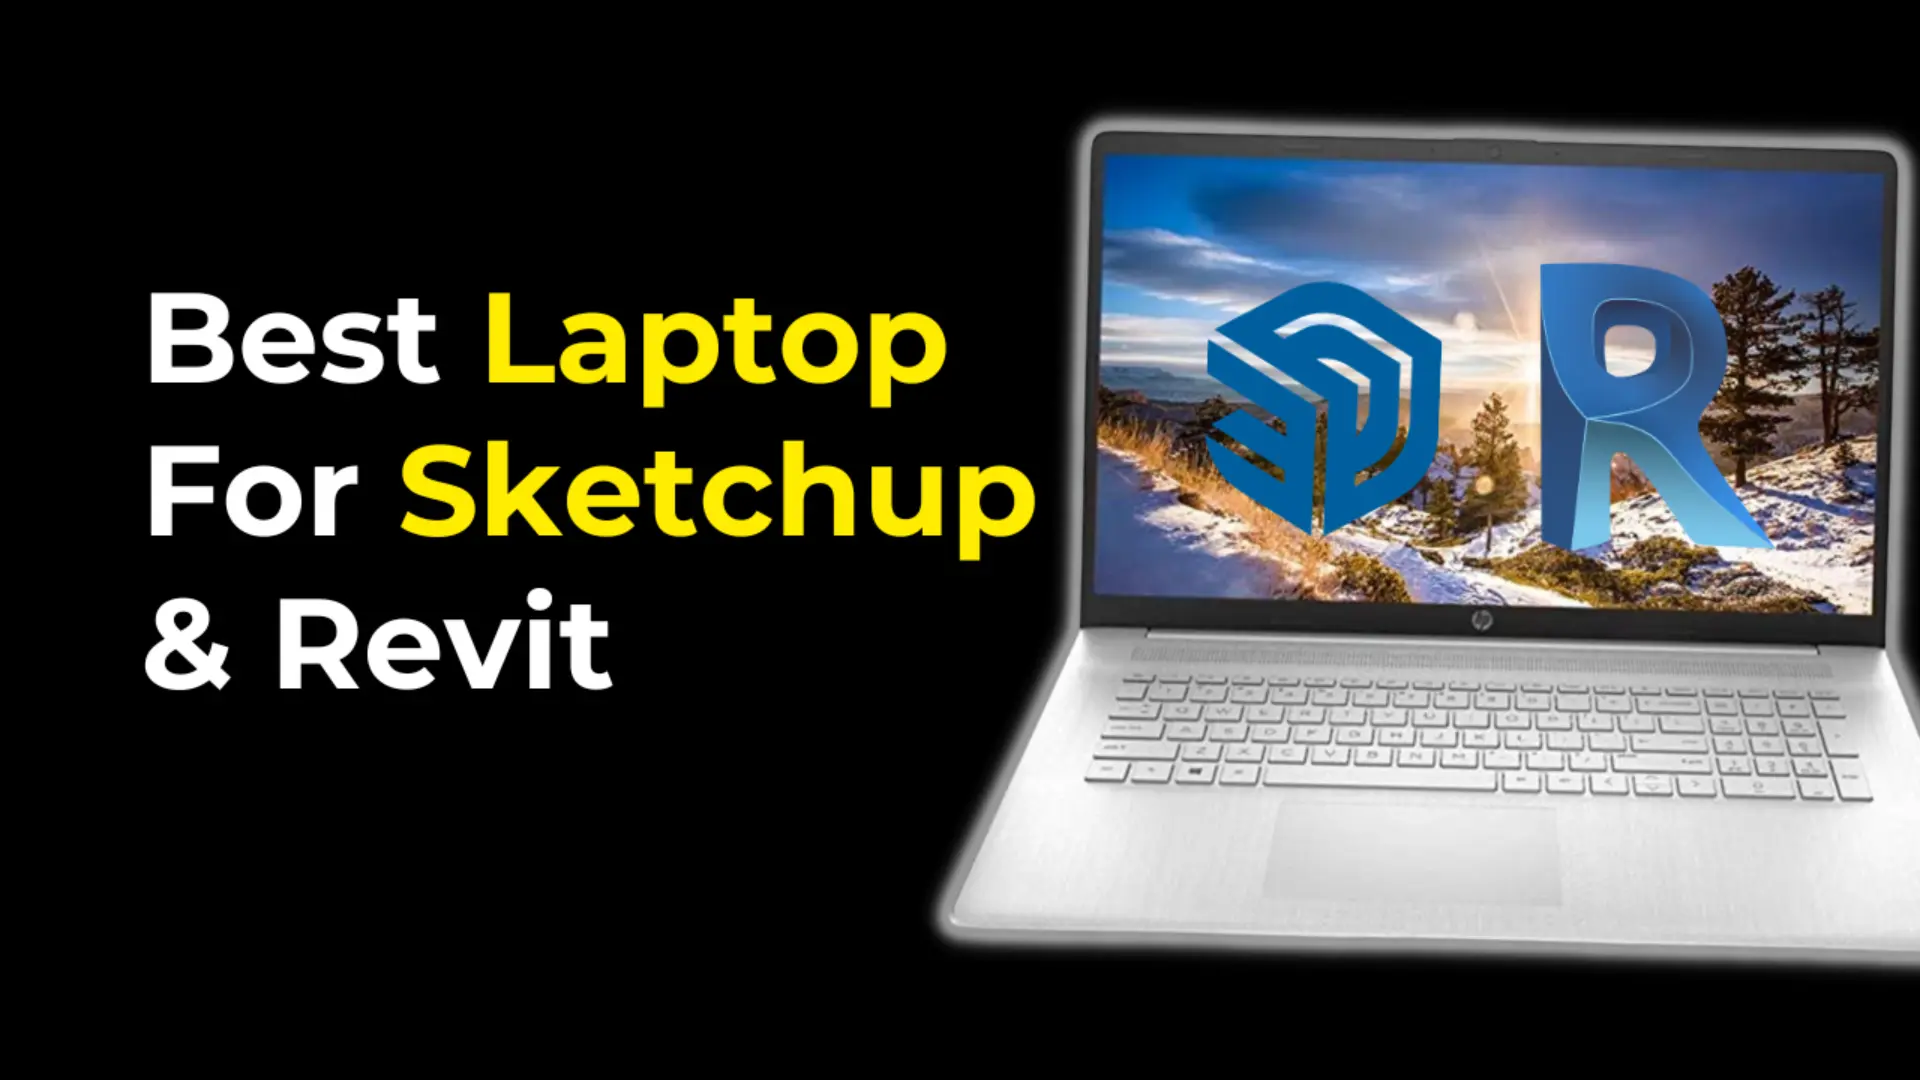 Best Laptop For Sketchup & Revit